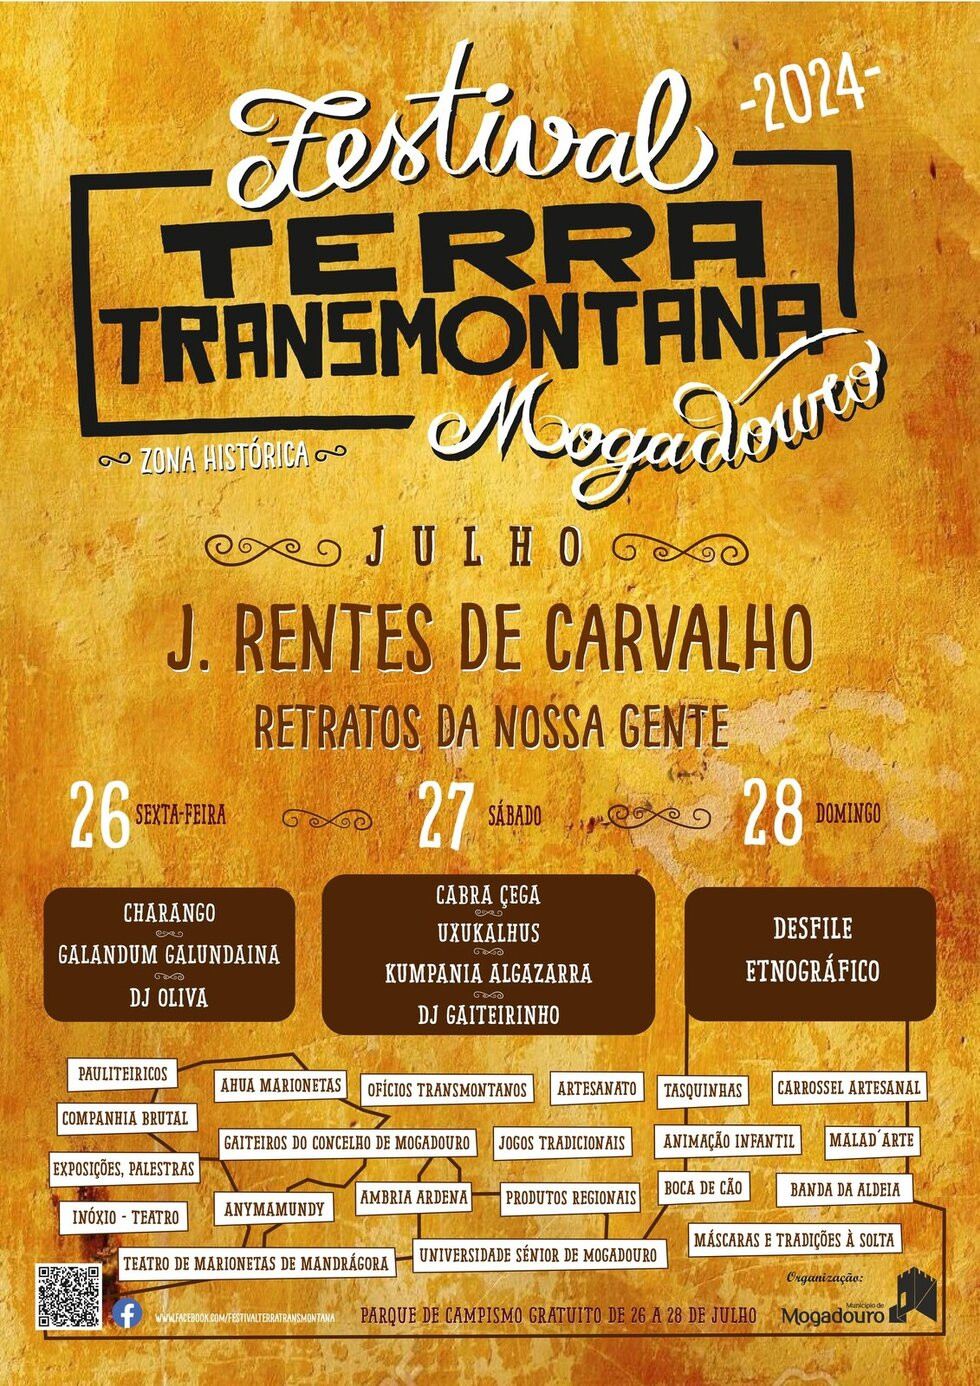 Festival da Terra Transmontana em Mogadouro começa amanhã